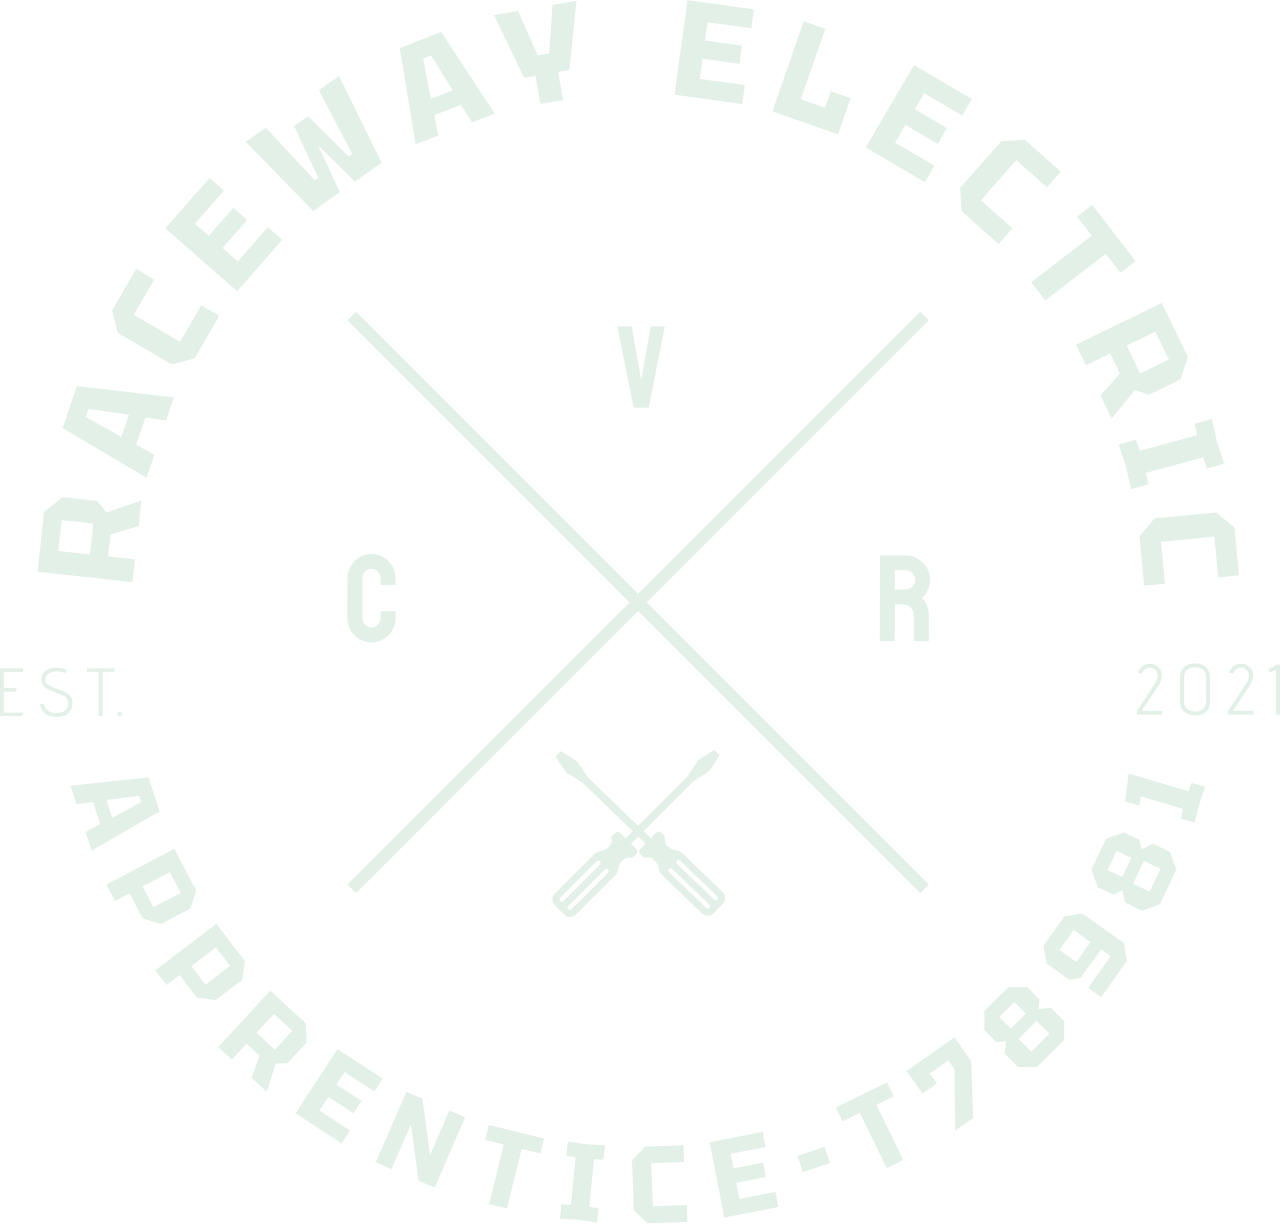 RACEWAY ELECTRIC's web page